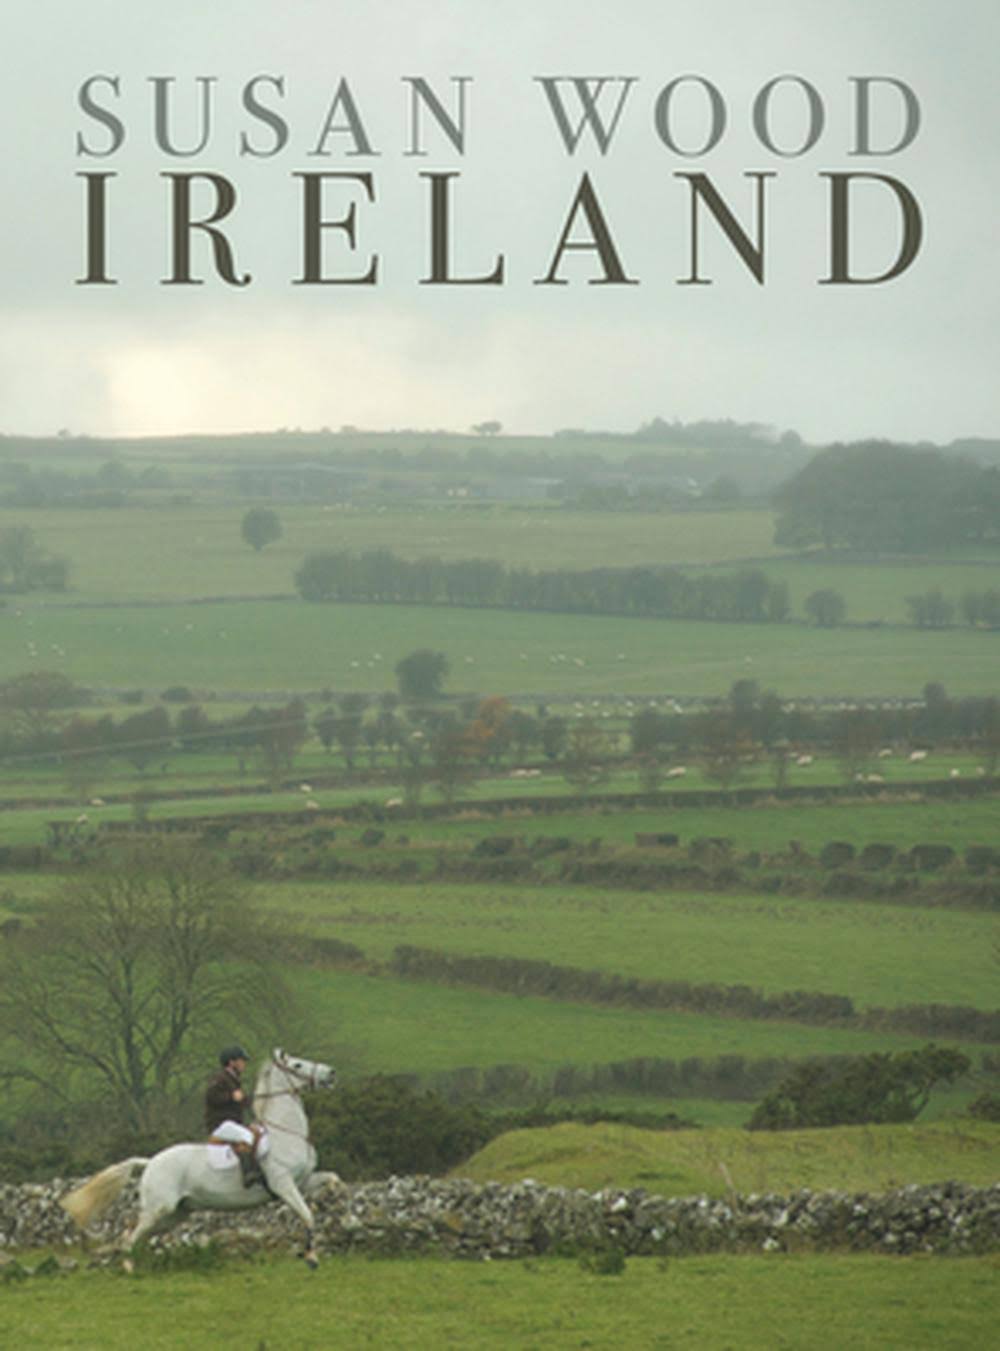 IRELAND By Susan Wood 9781843517450 (Hardback)